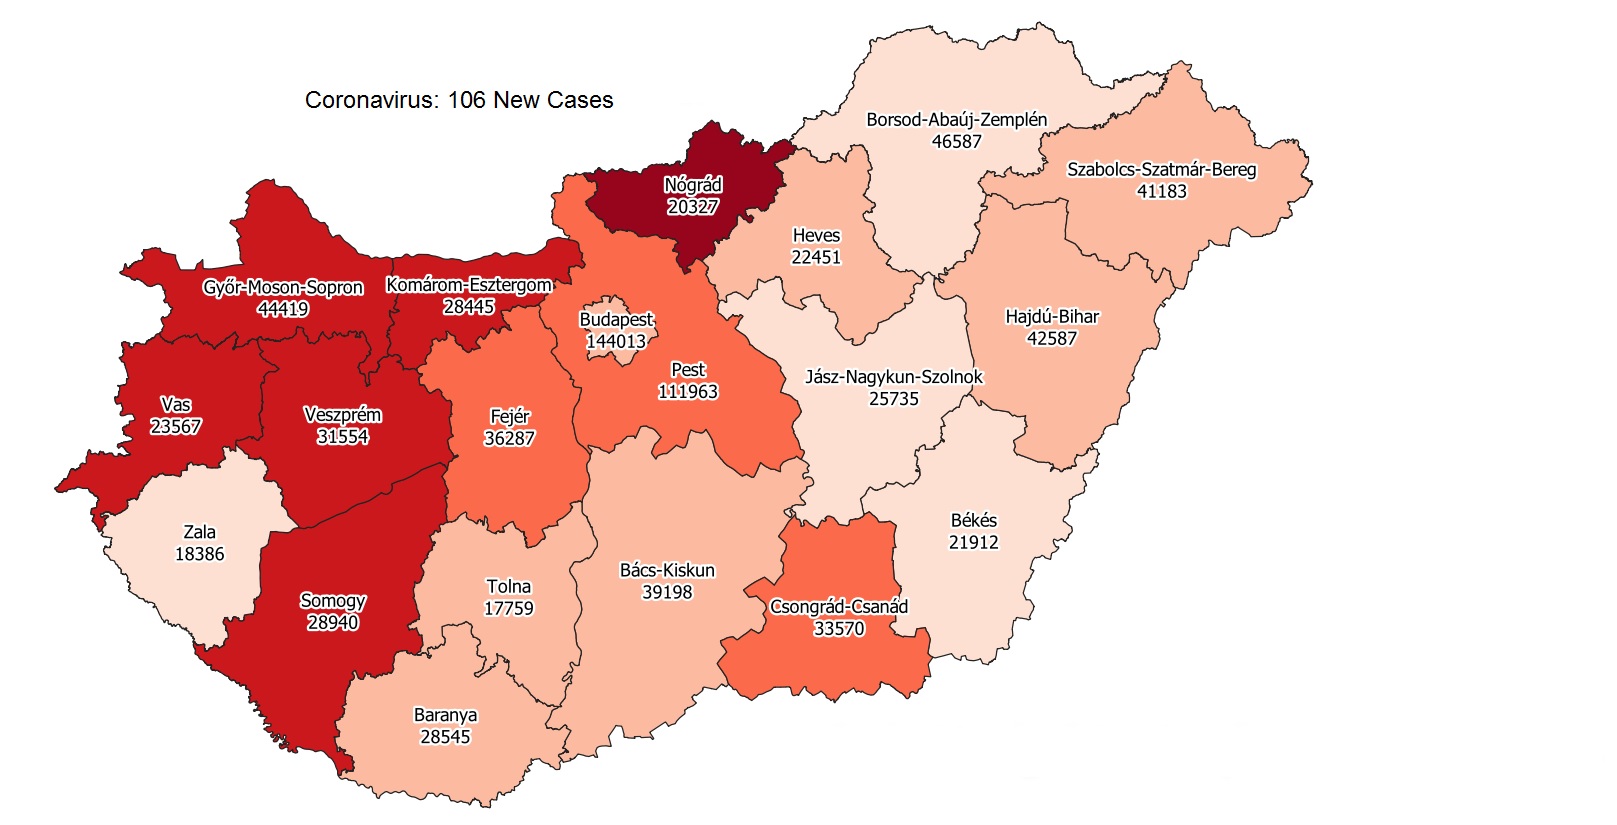 Covid Update: Hungary Records 2 Coronavirus Fatalities, 106 New Infections